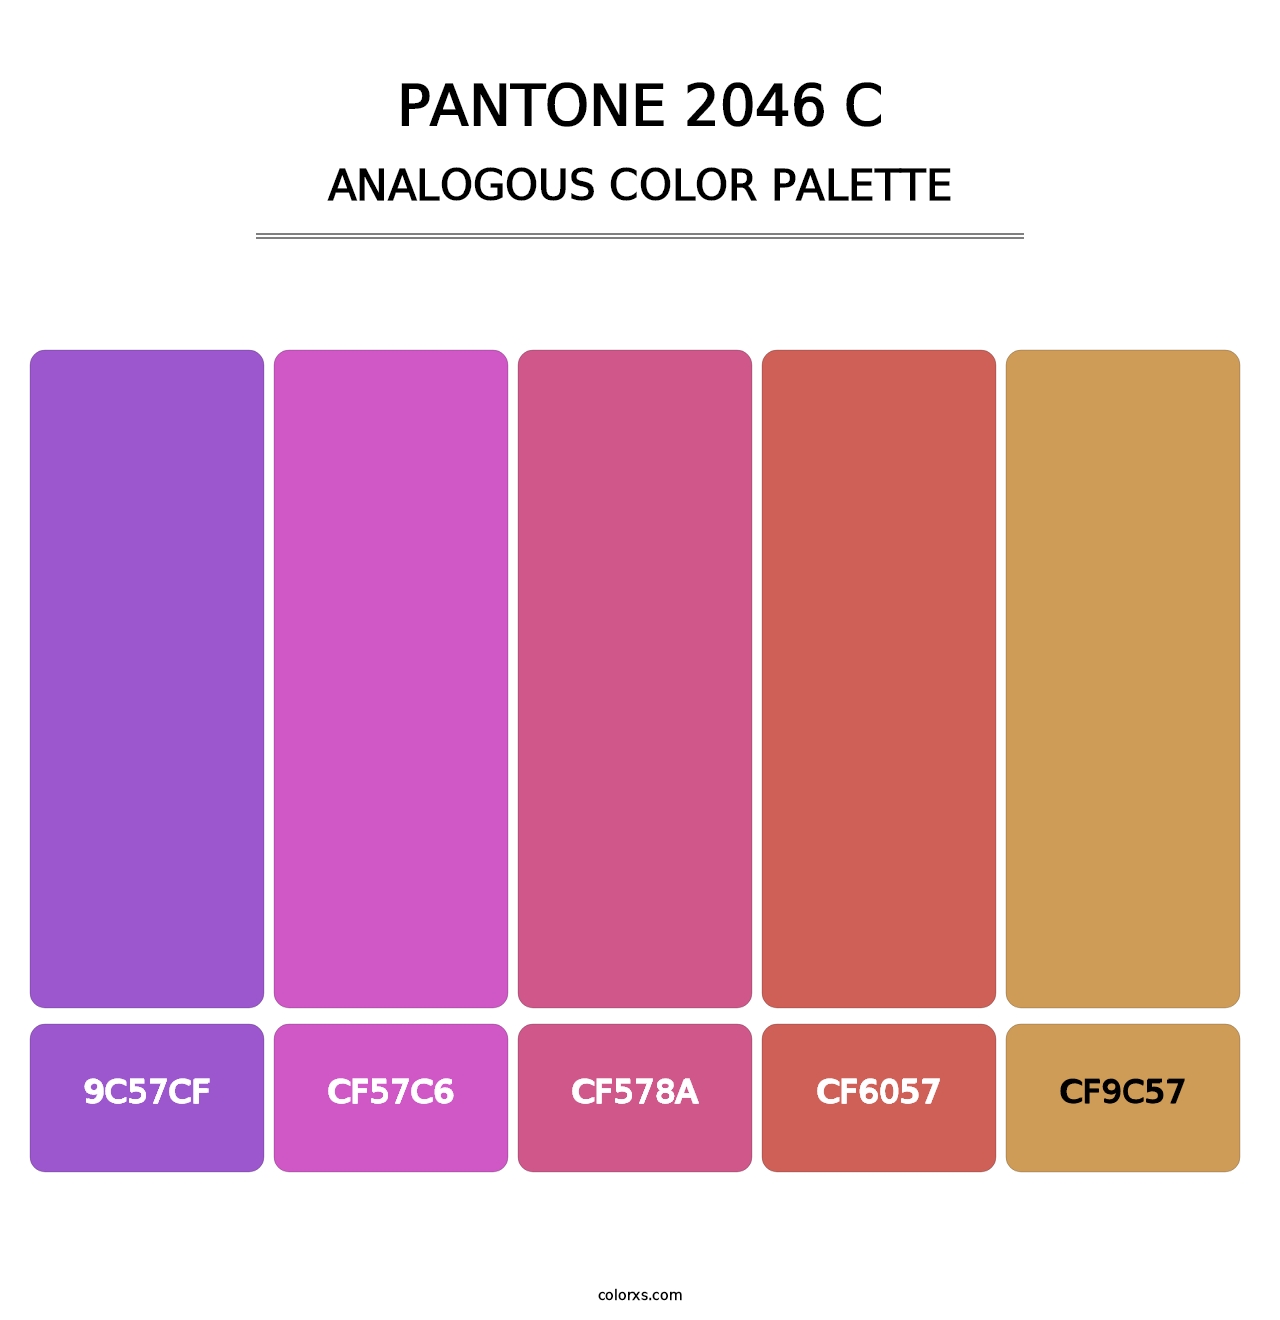 PANTONE 2046 C - Analogous Color Palette